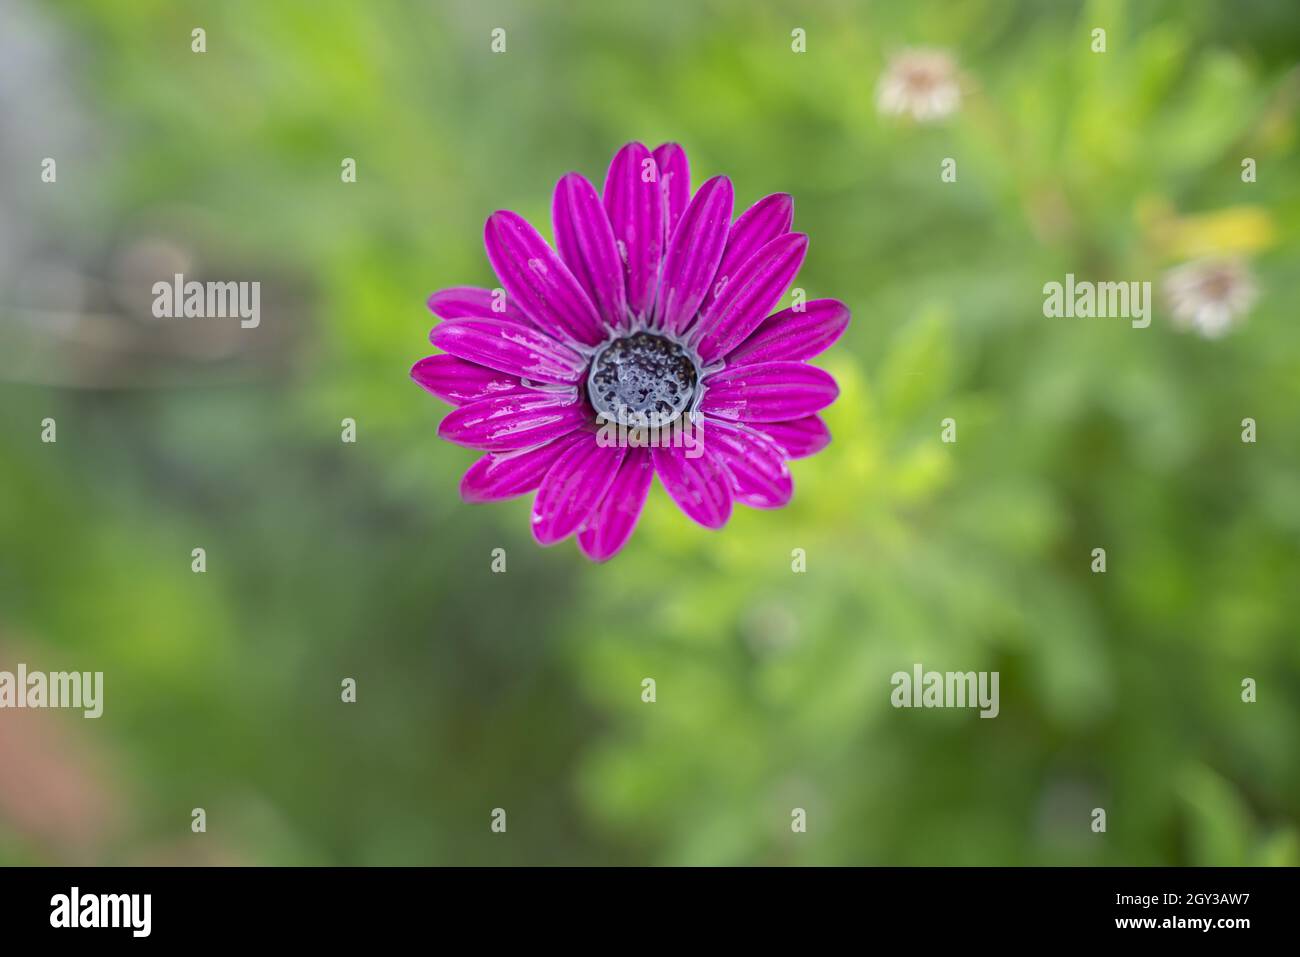 Selektive Fokusaufnahme der violetten osteospermum-Blume Stockfoto